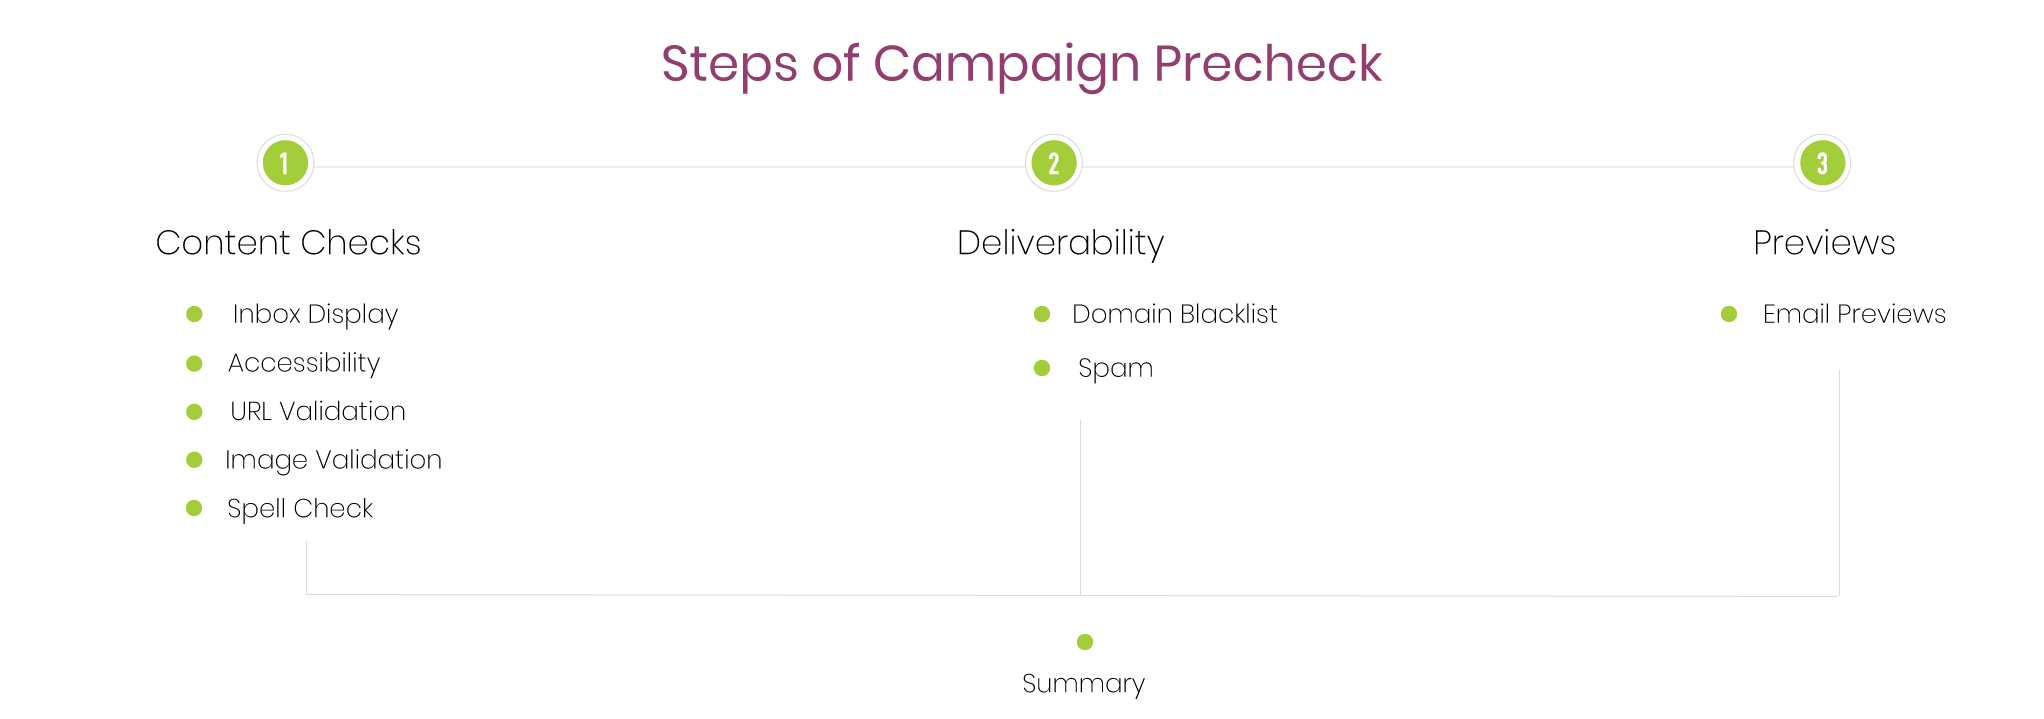 Campaign Precheck Steps